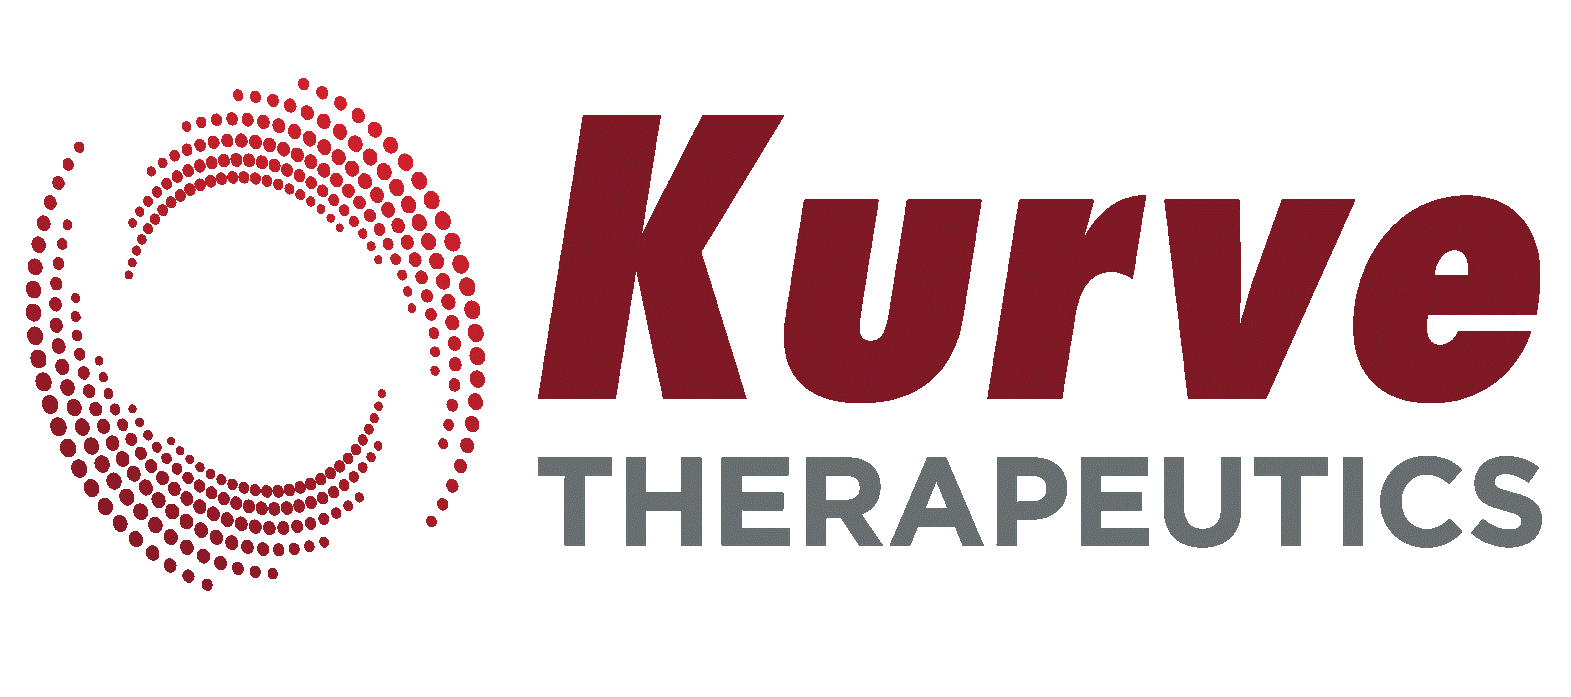 Kurve Therapeutics